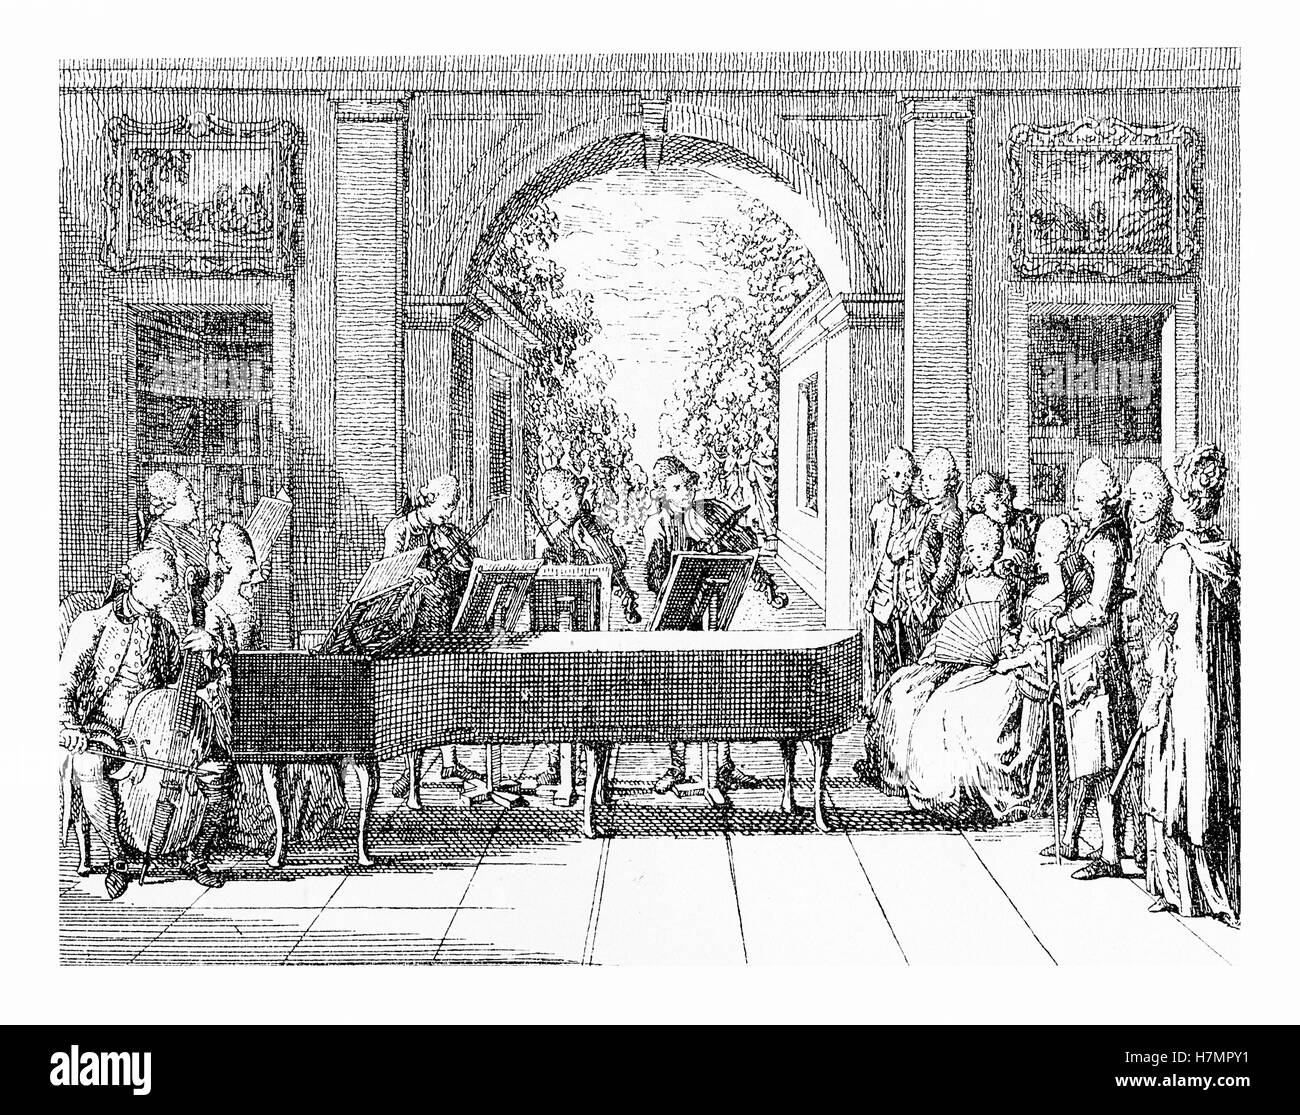 Il XVIII secolo, concerto raccolta in giardino incorniciato dalla splendida architettura rinascimentale Foto Stock